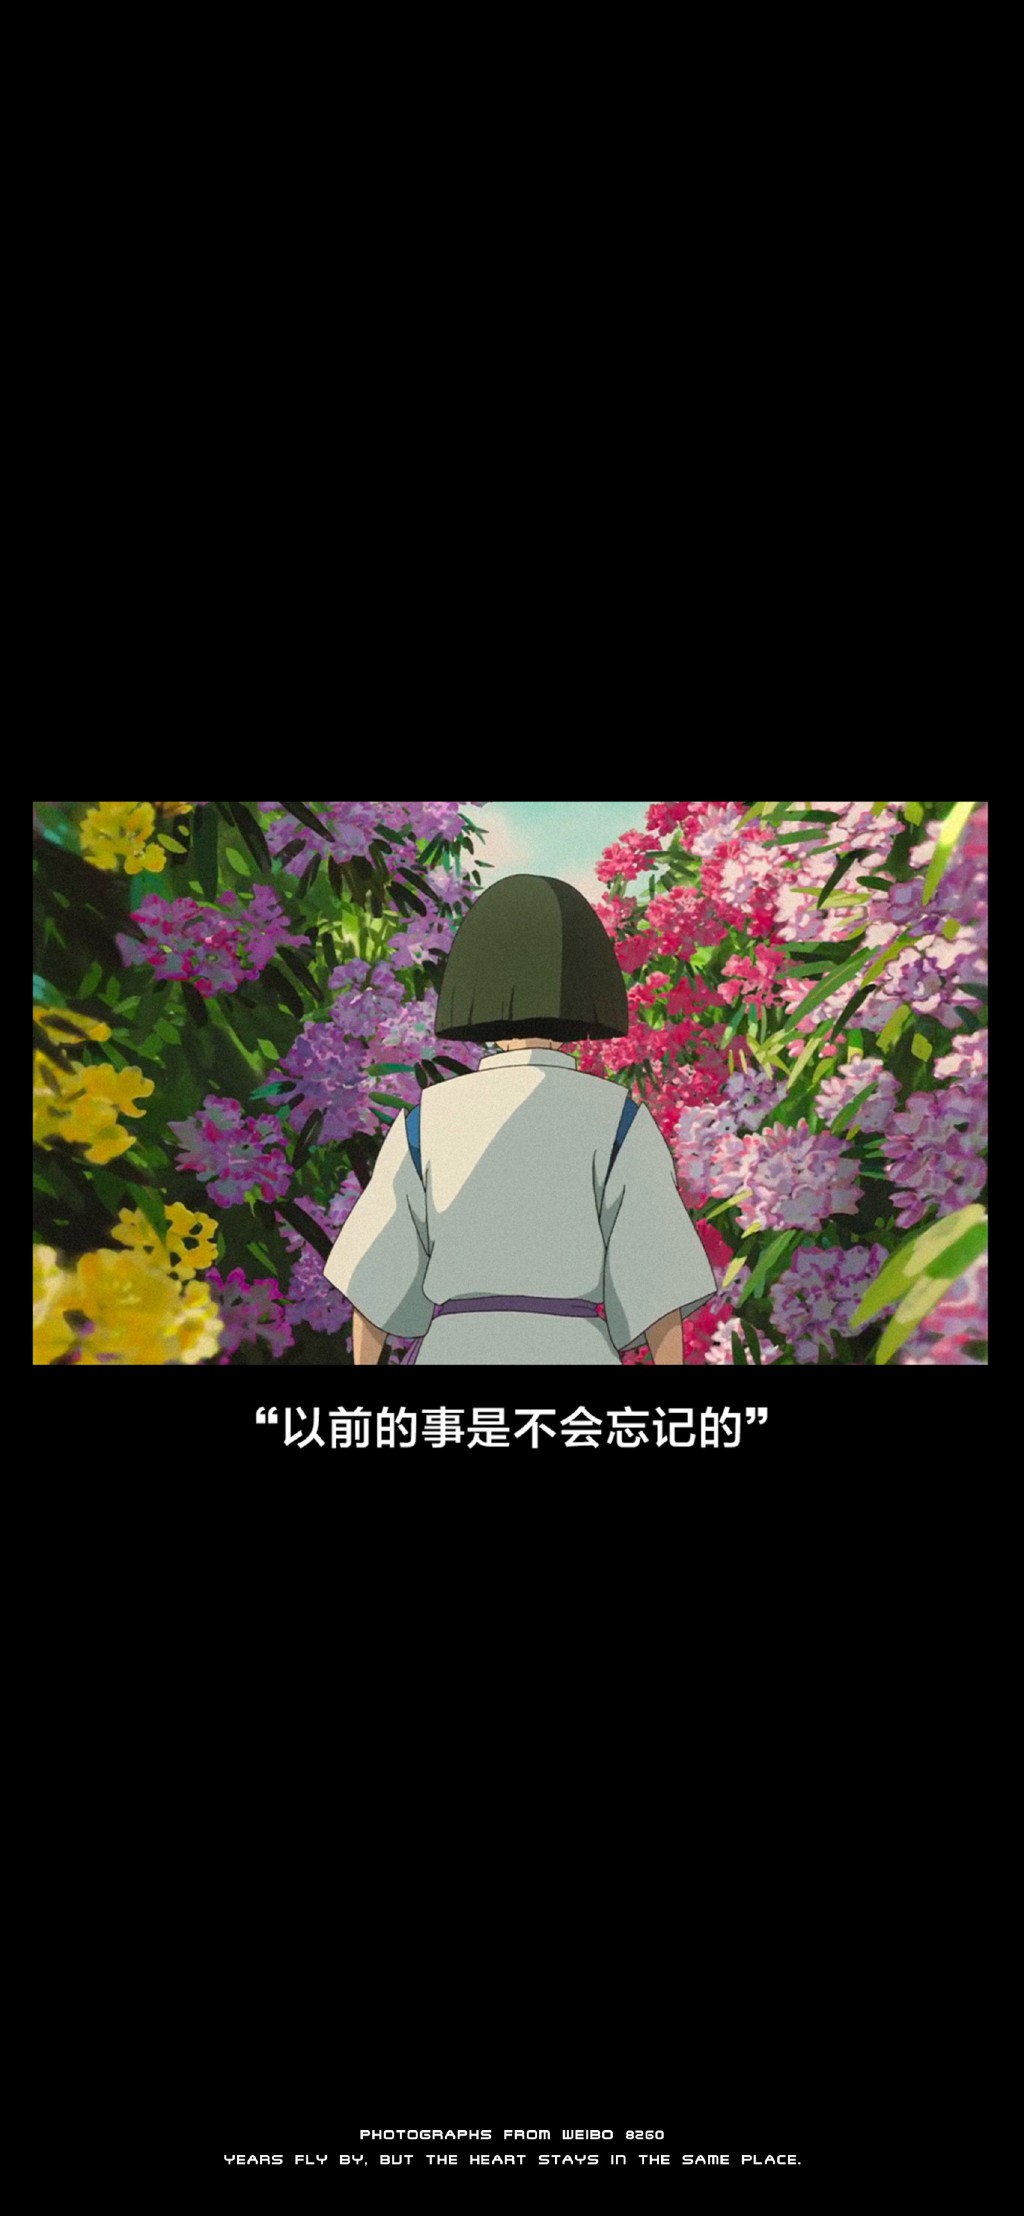 宫崎骏动漫《千与千寻》台词手机壁纸